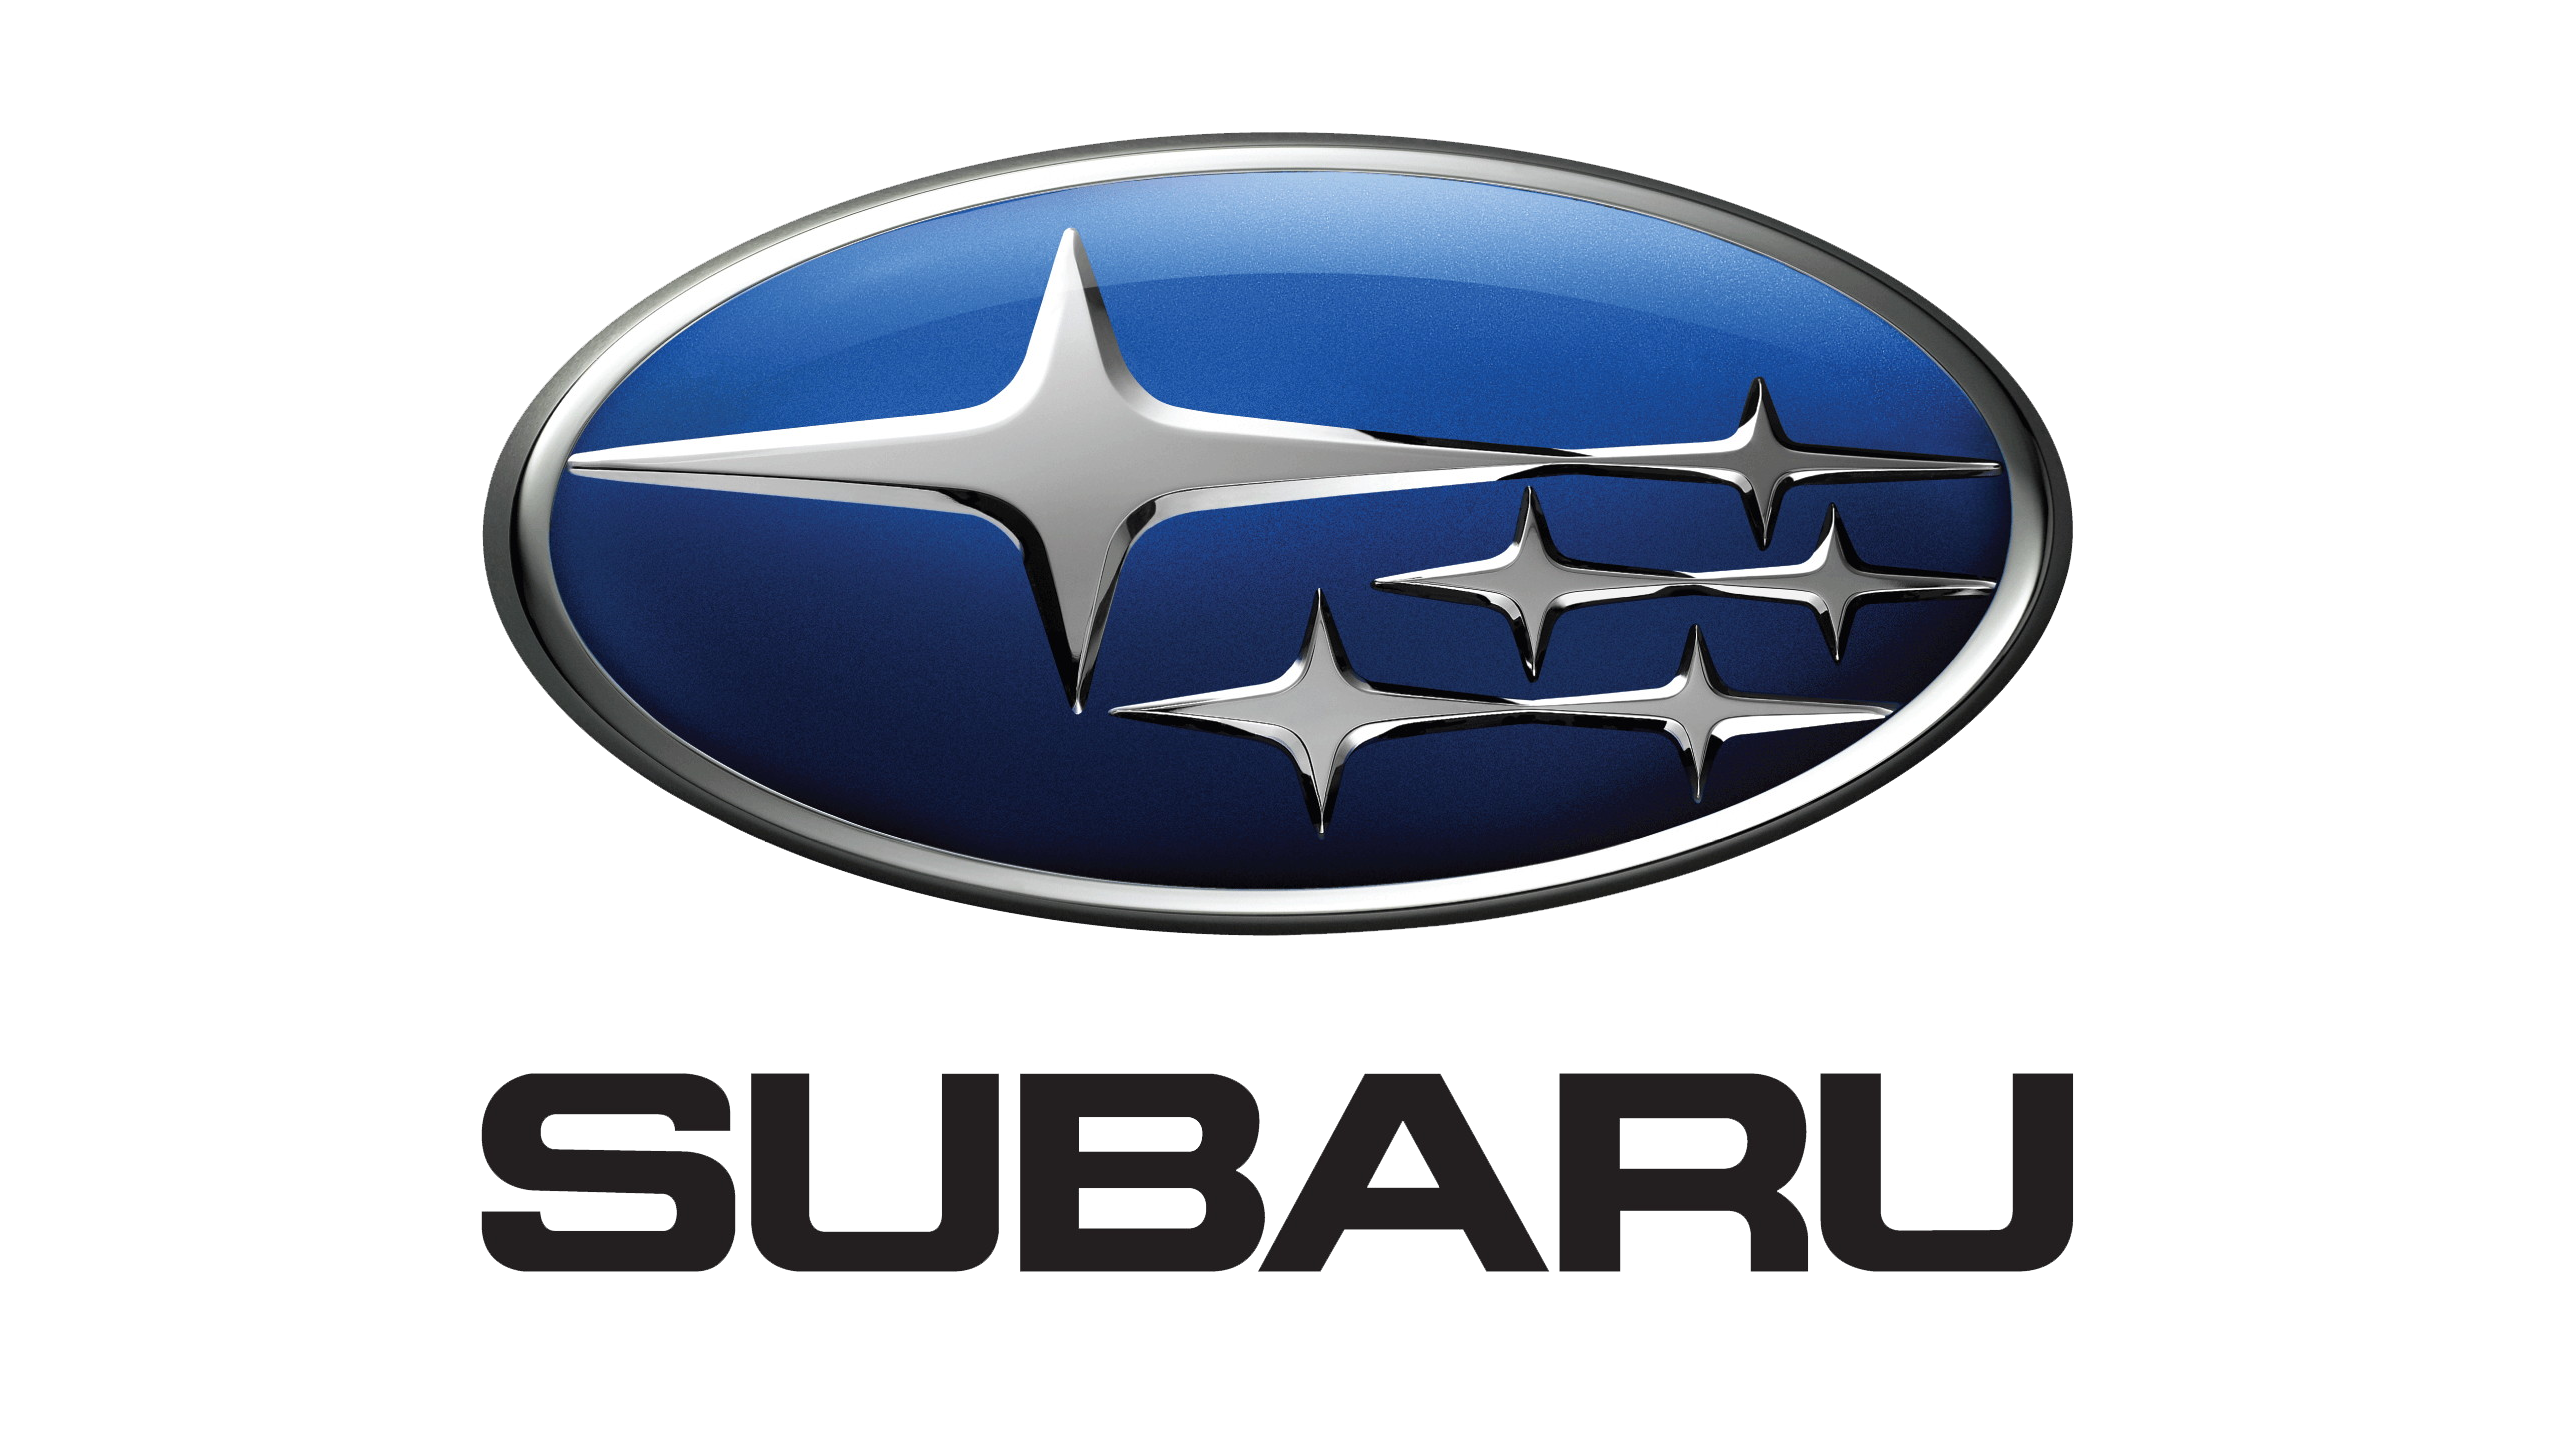 Subaru-logo-2001-2560x1440.png